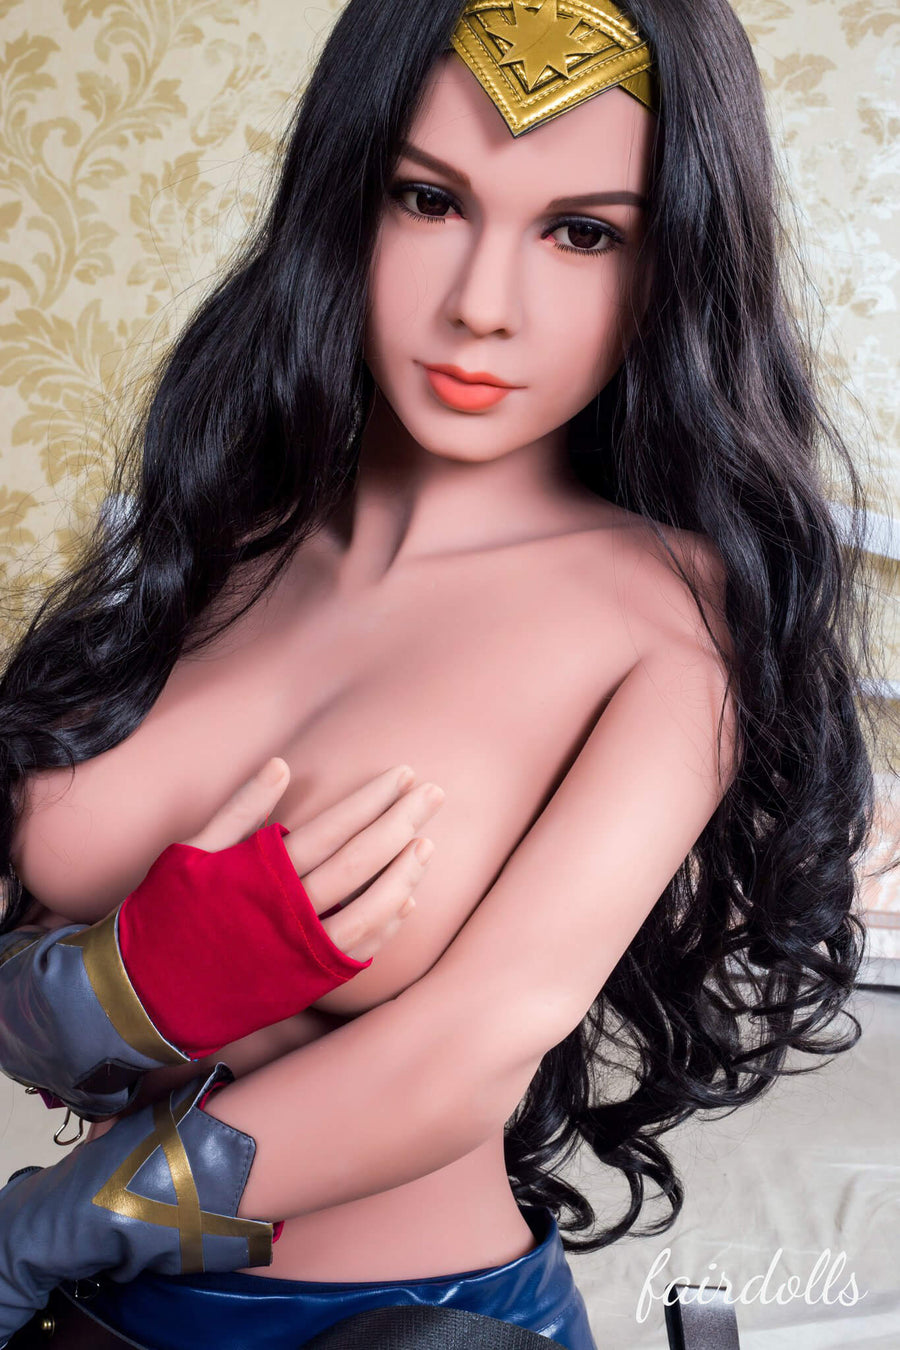 5'4" (165cm) D-Cup Curvy Sex Doll Body (WM Doll)